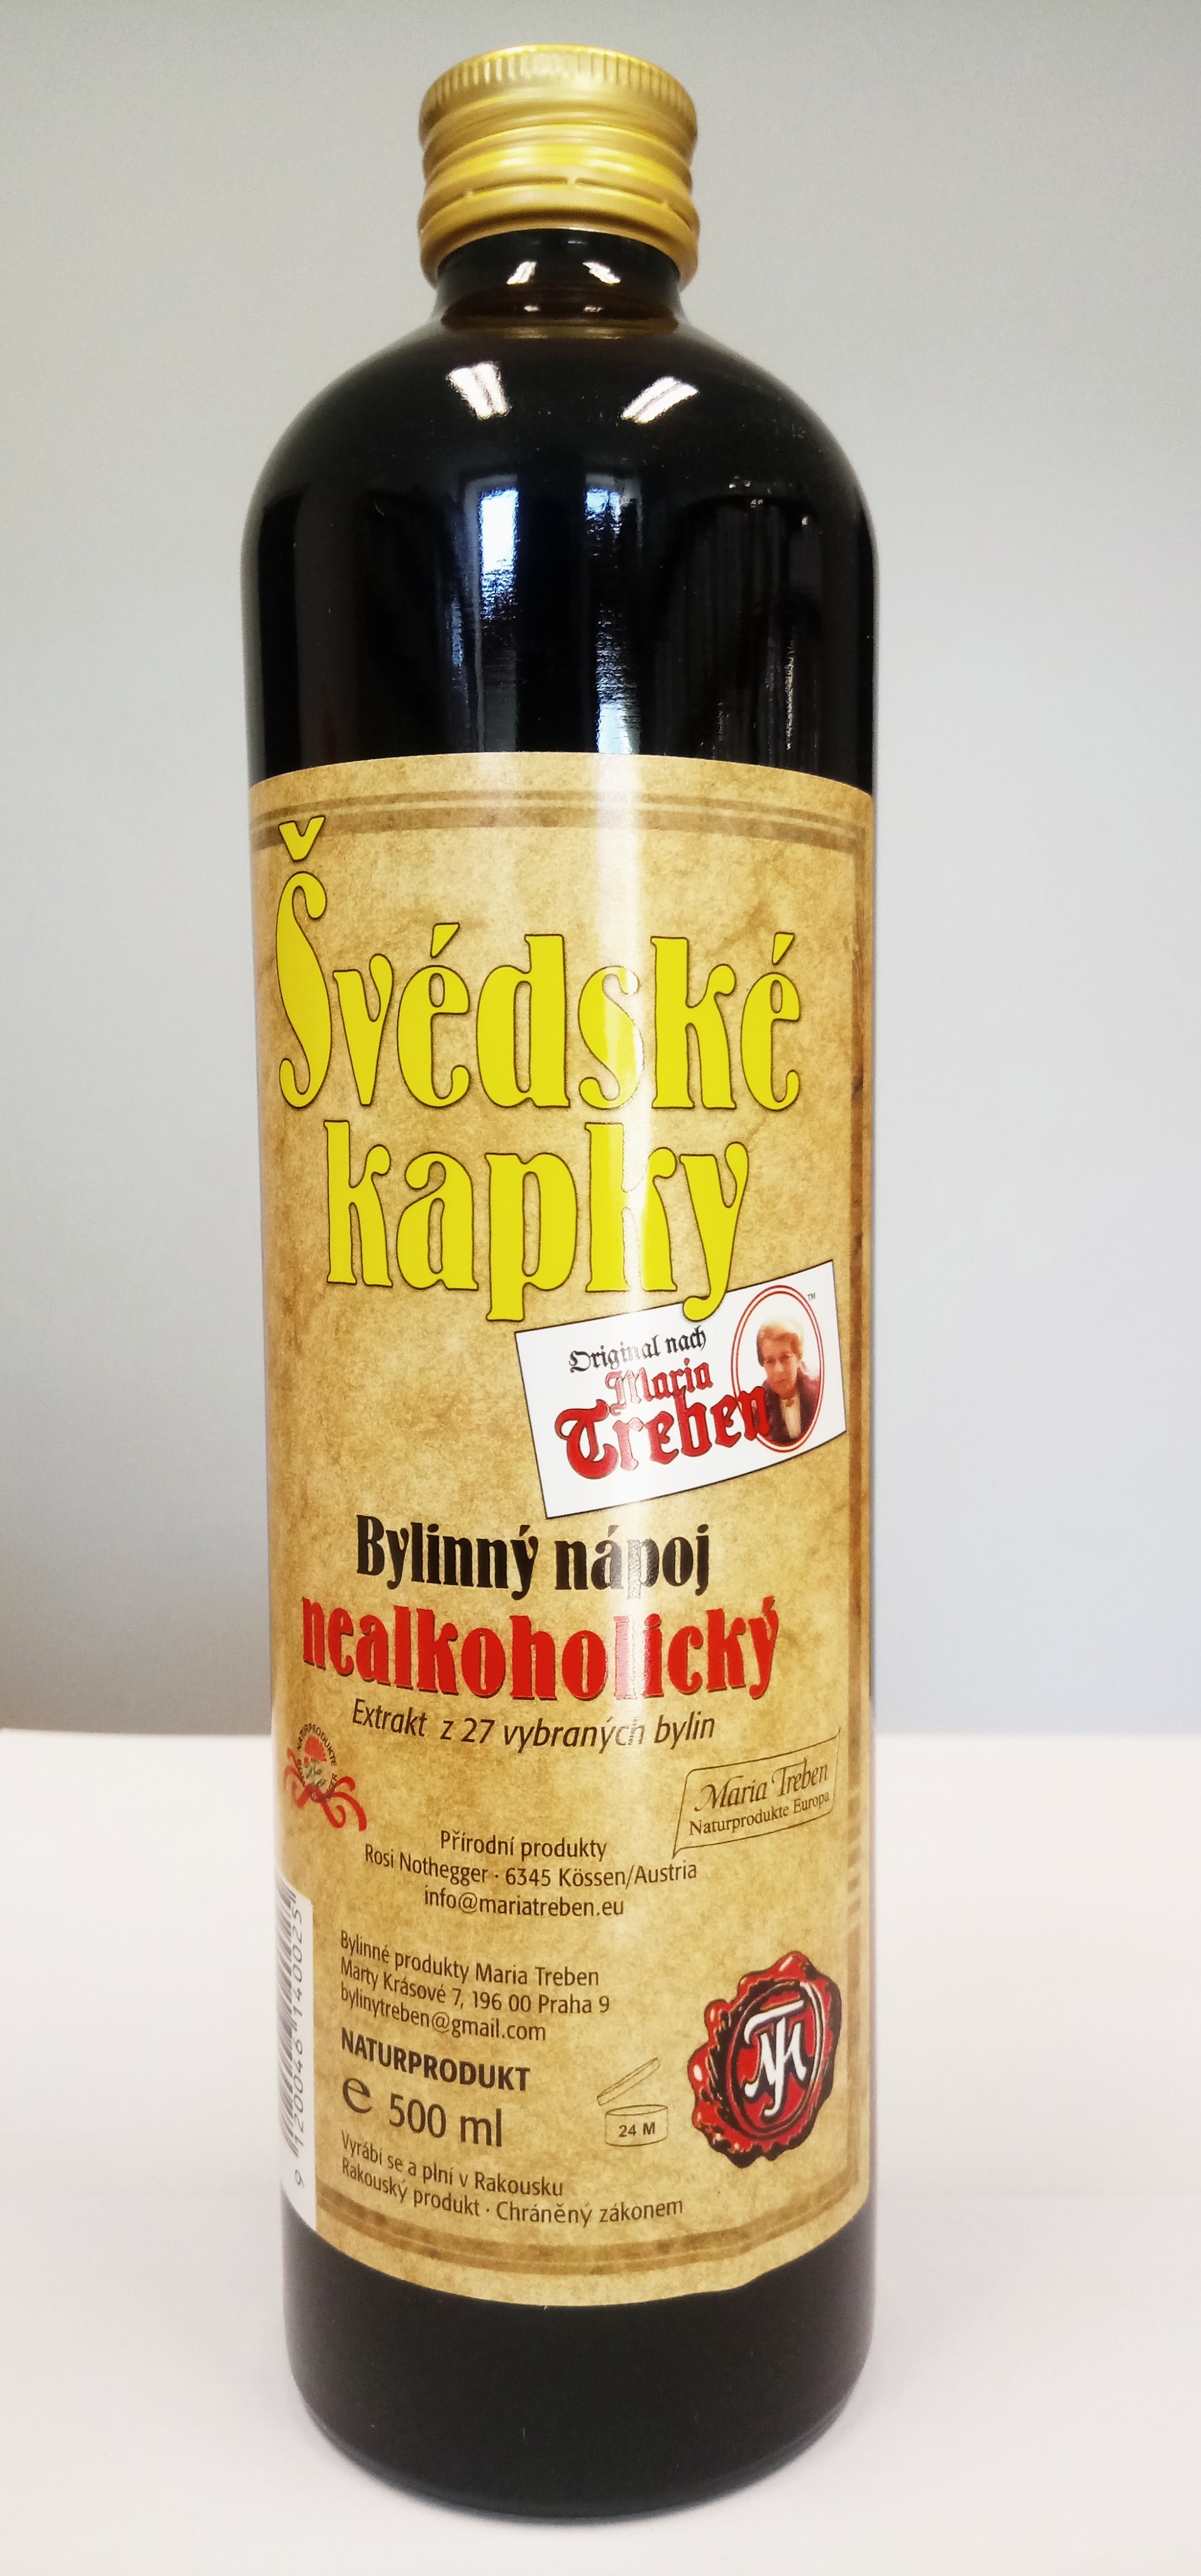 V DSK  KAPKY  ORIGIN L nealkoholick  500ml Naturprodukte